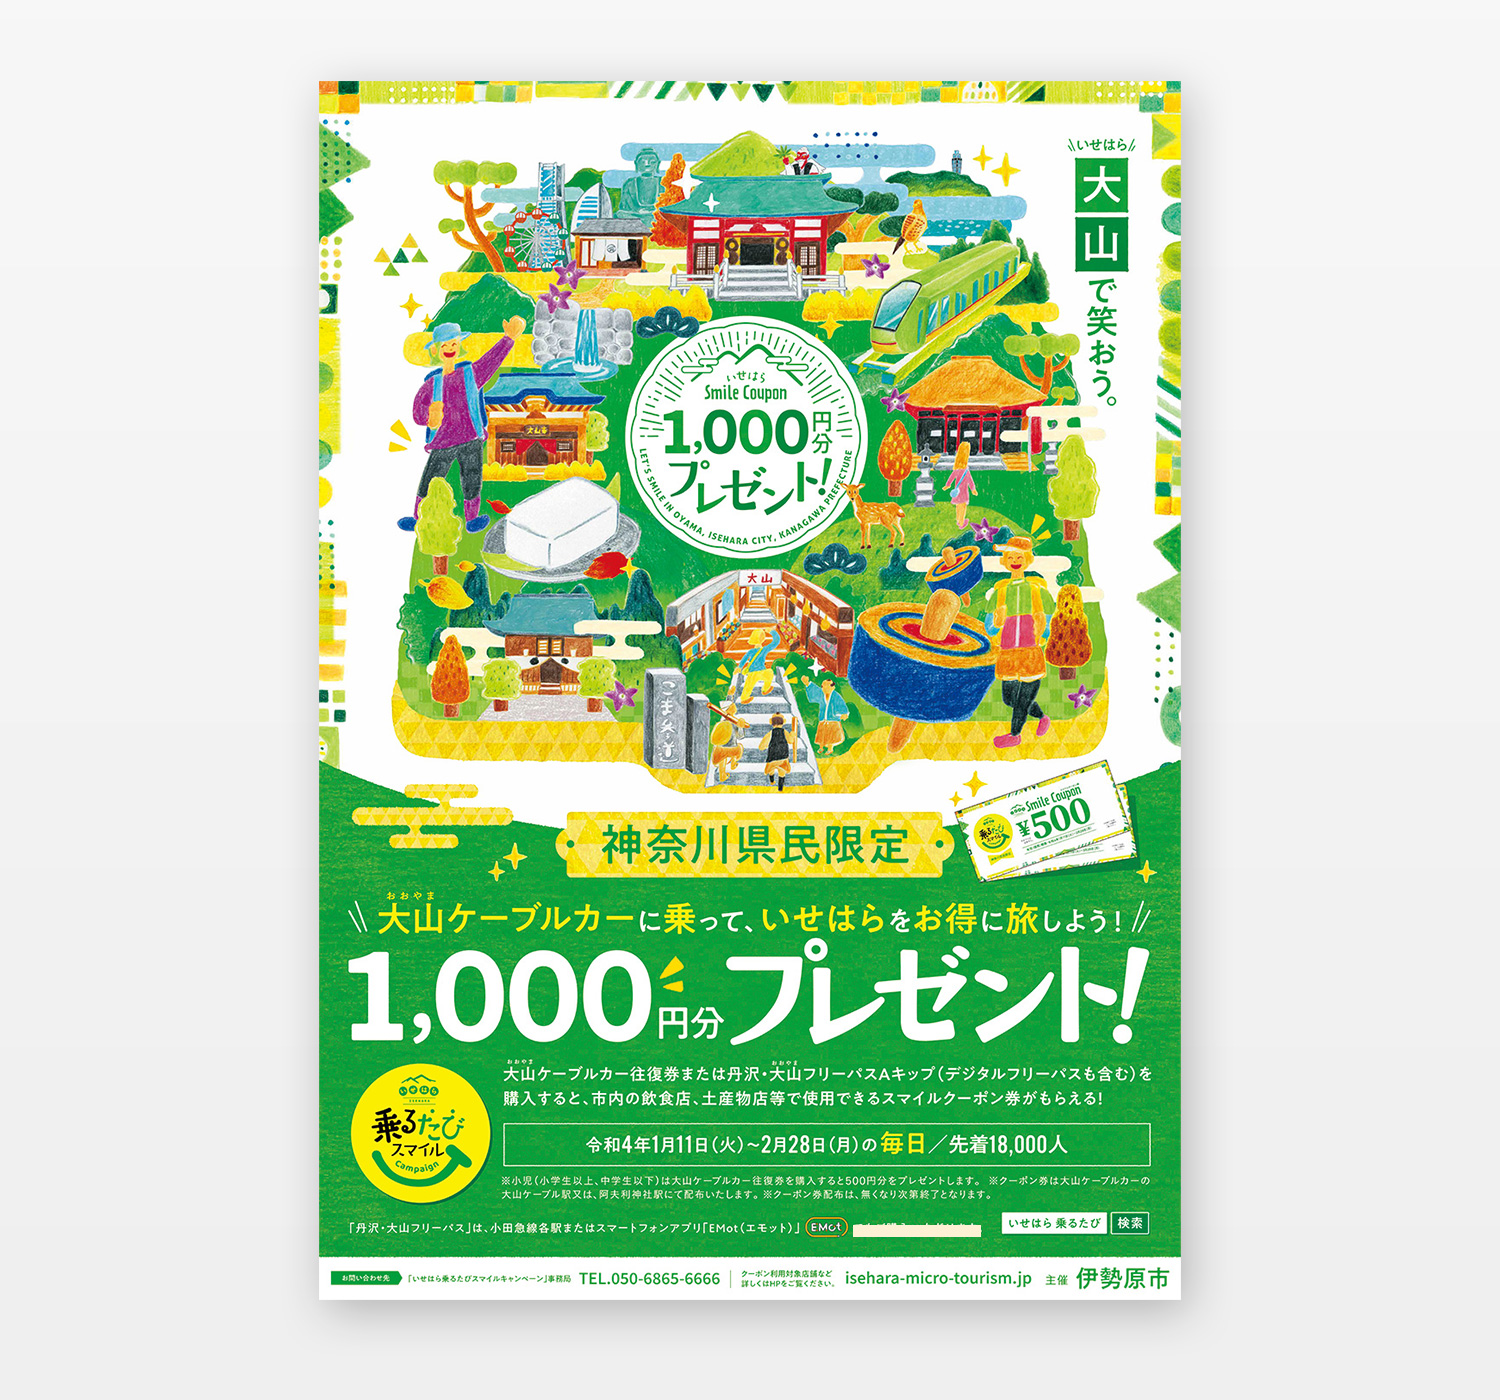 神奈川県伊勢原市にある大山地区を中心に観光消費を促すキャンペーンのイラスト